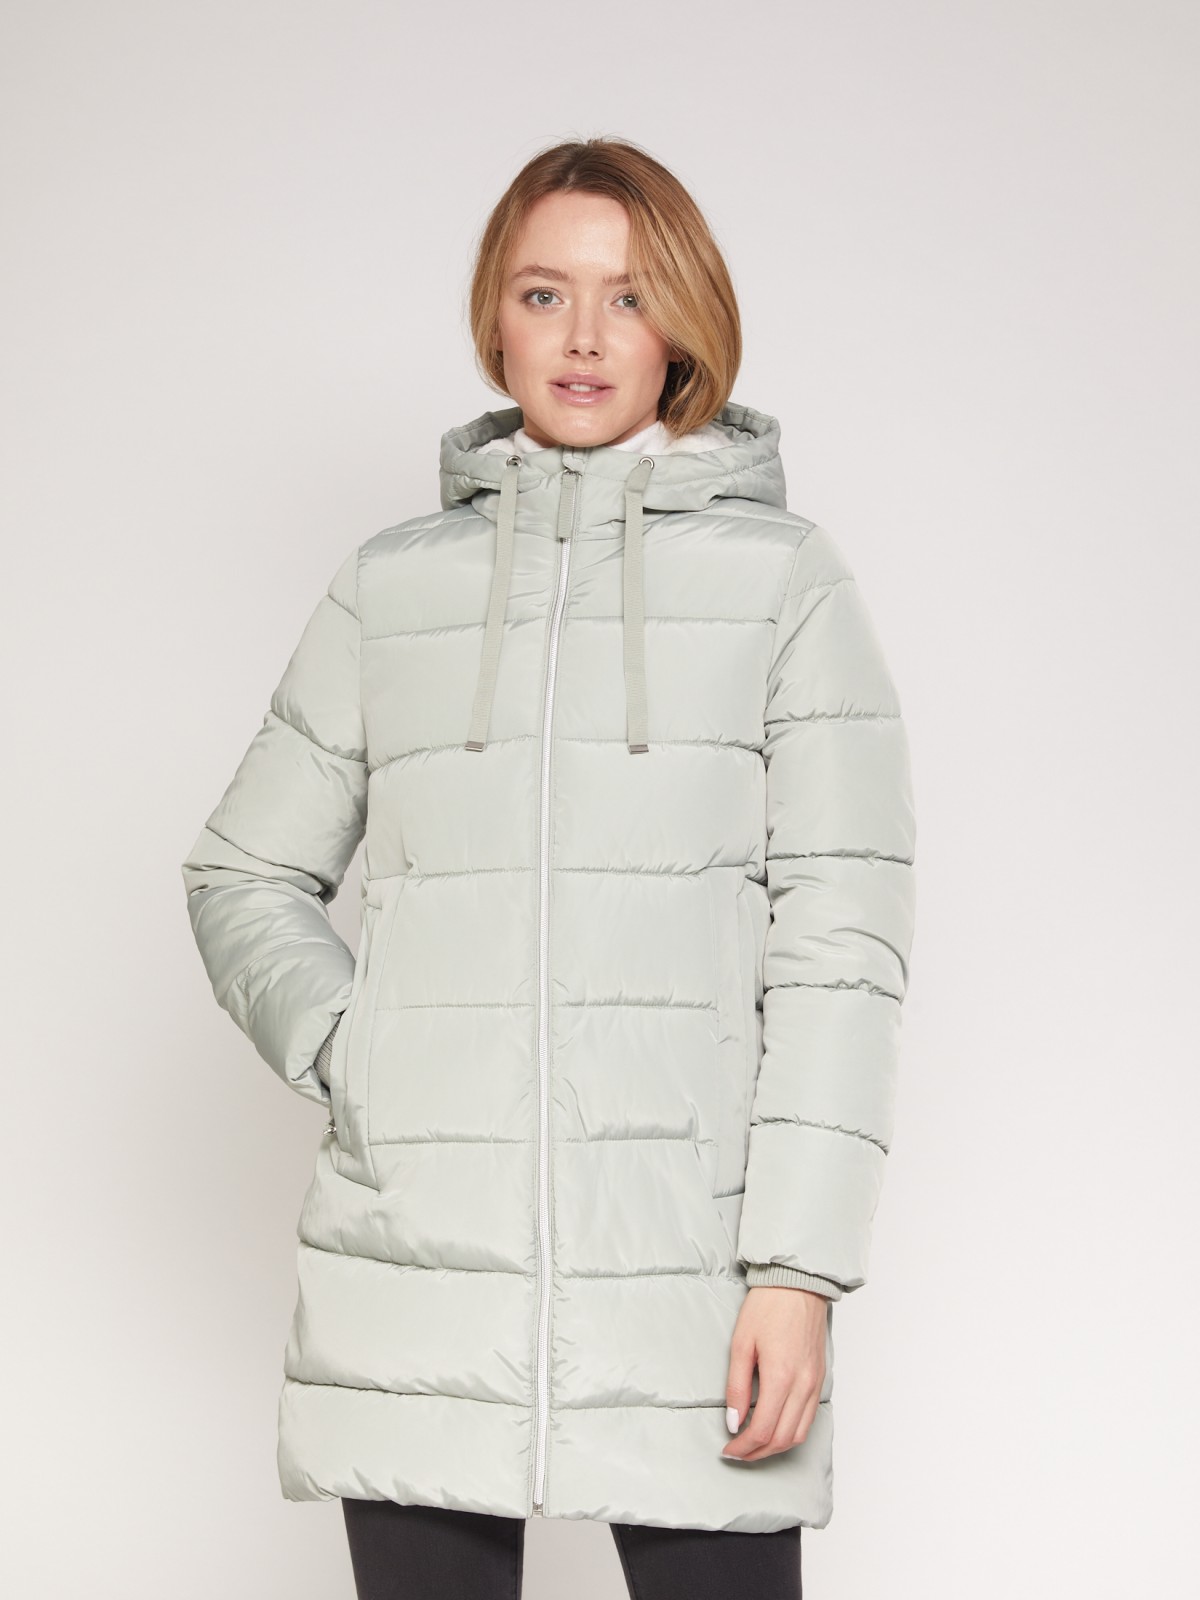 Утепленное стёганое пальто с капюшоном zolla 021335250034, цвет мятный, размер XS - фото 2